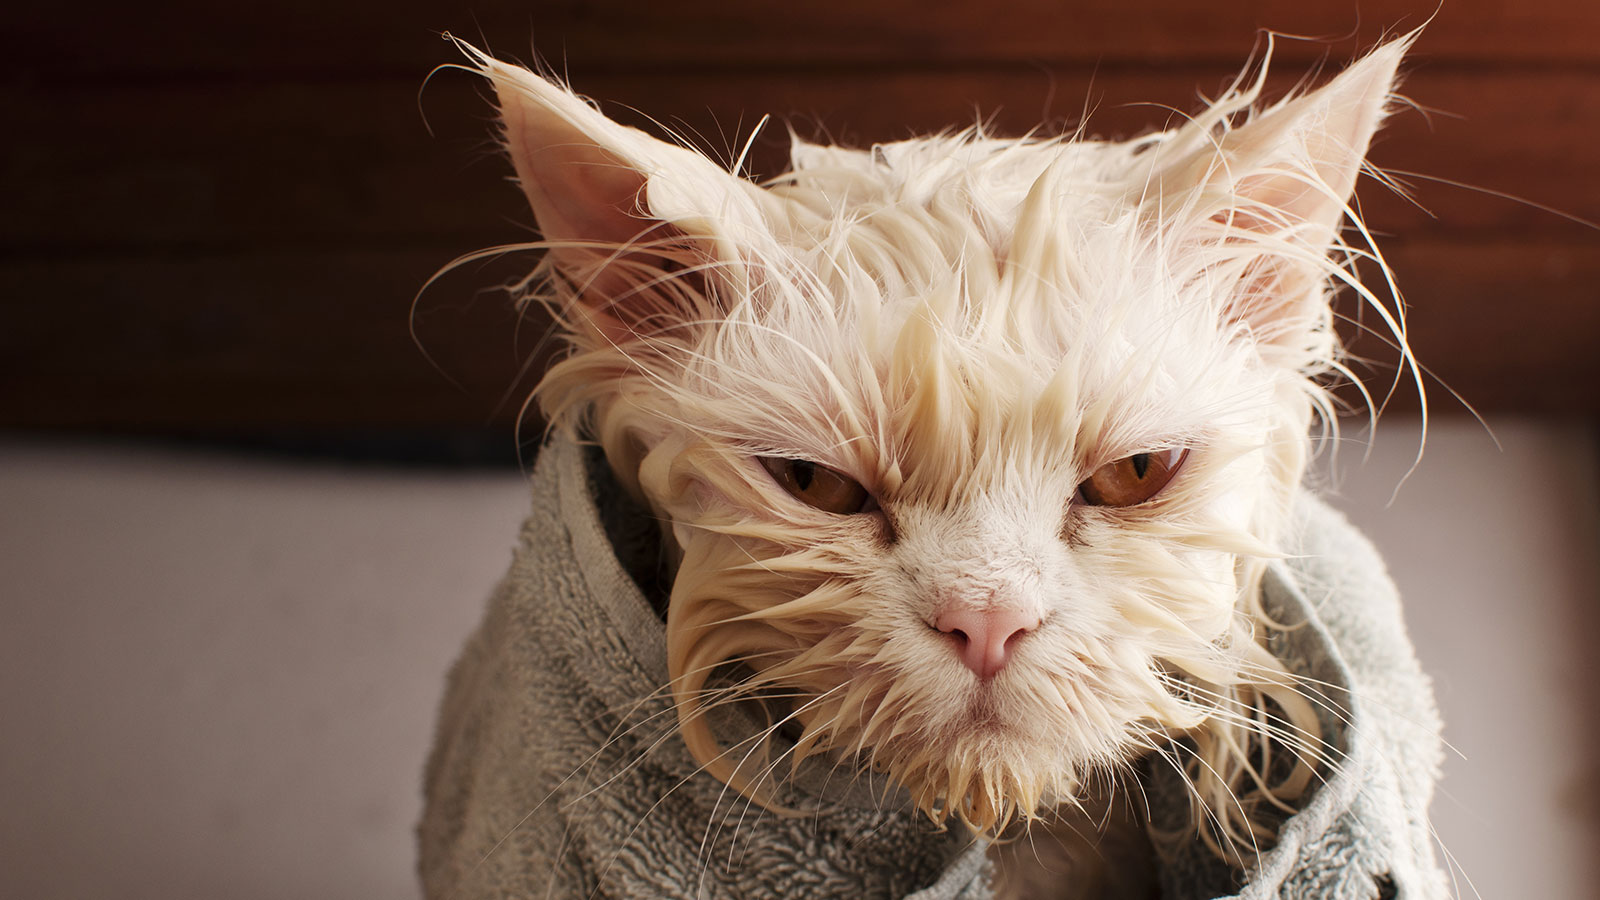 Wet cat after bath